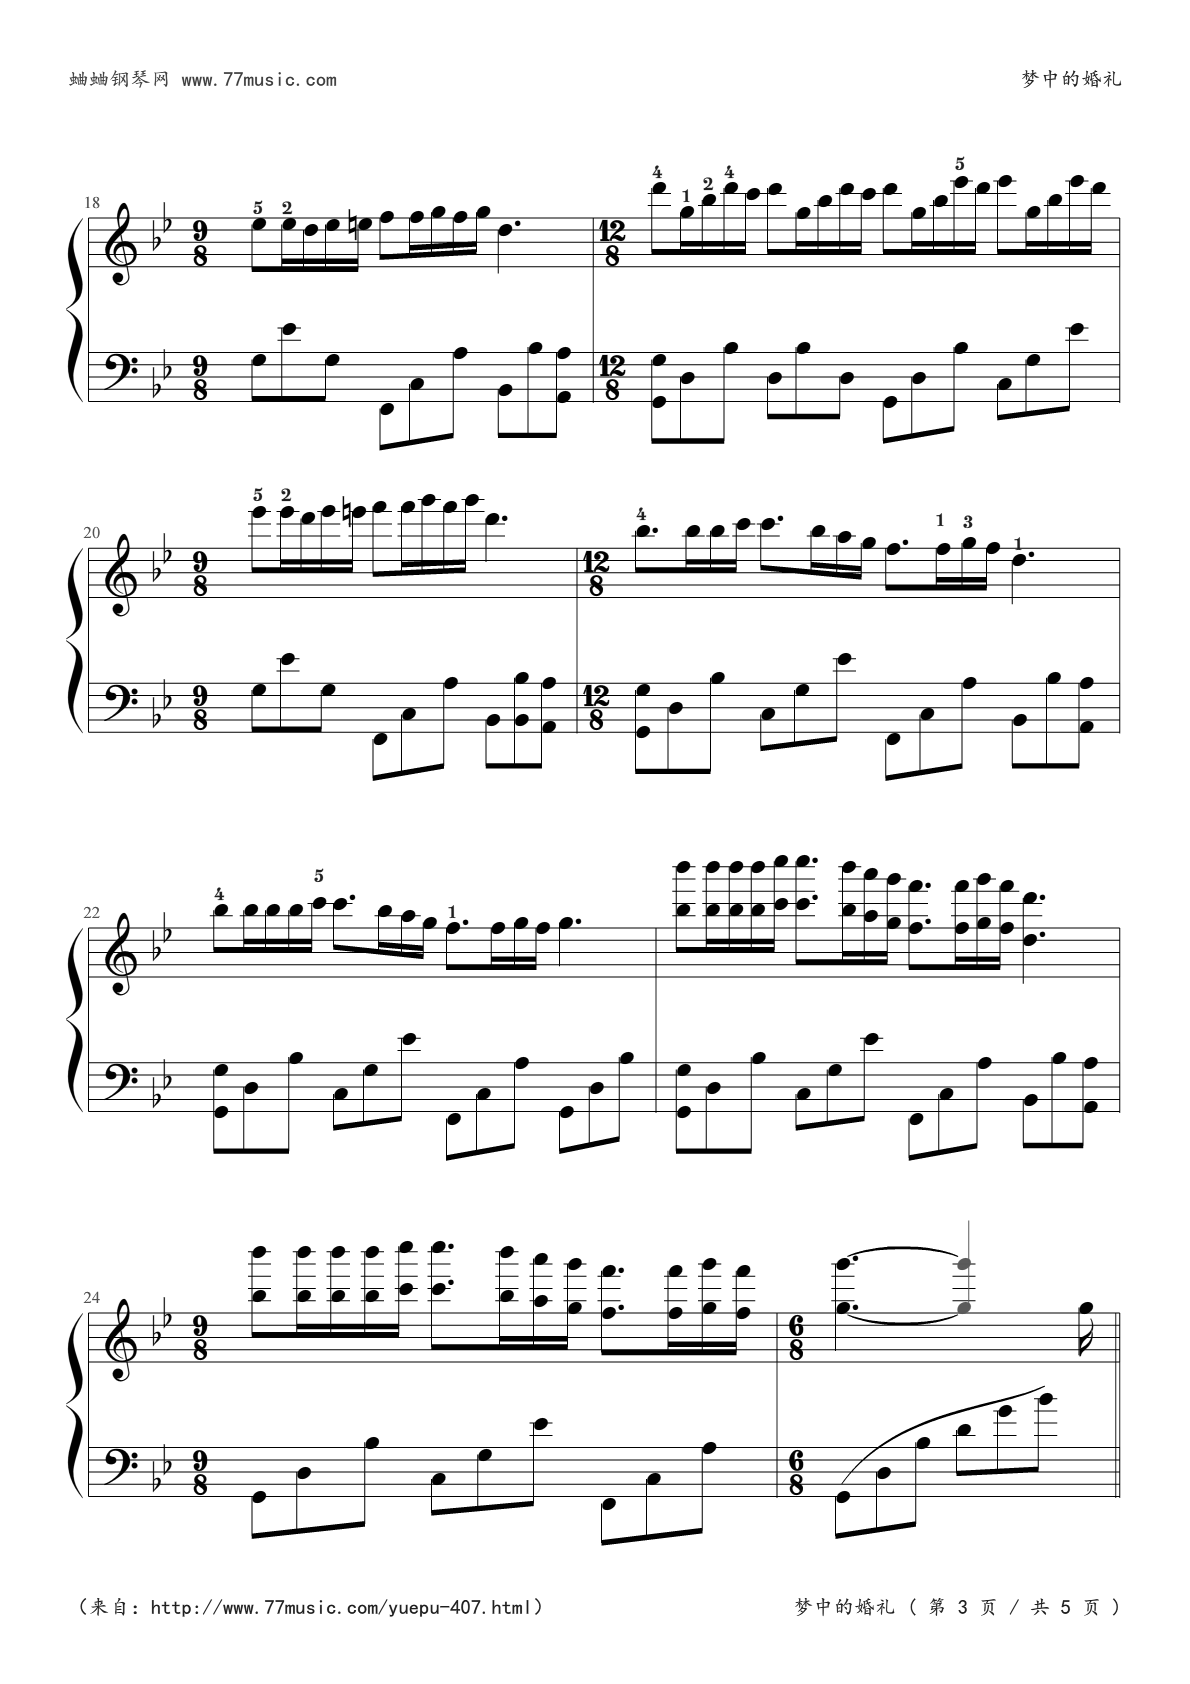 理查德克莱德曼-梦中的婚礼-钢琴谱高清版